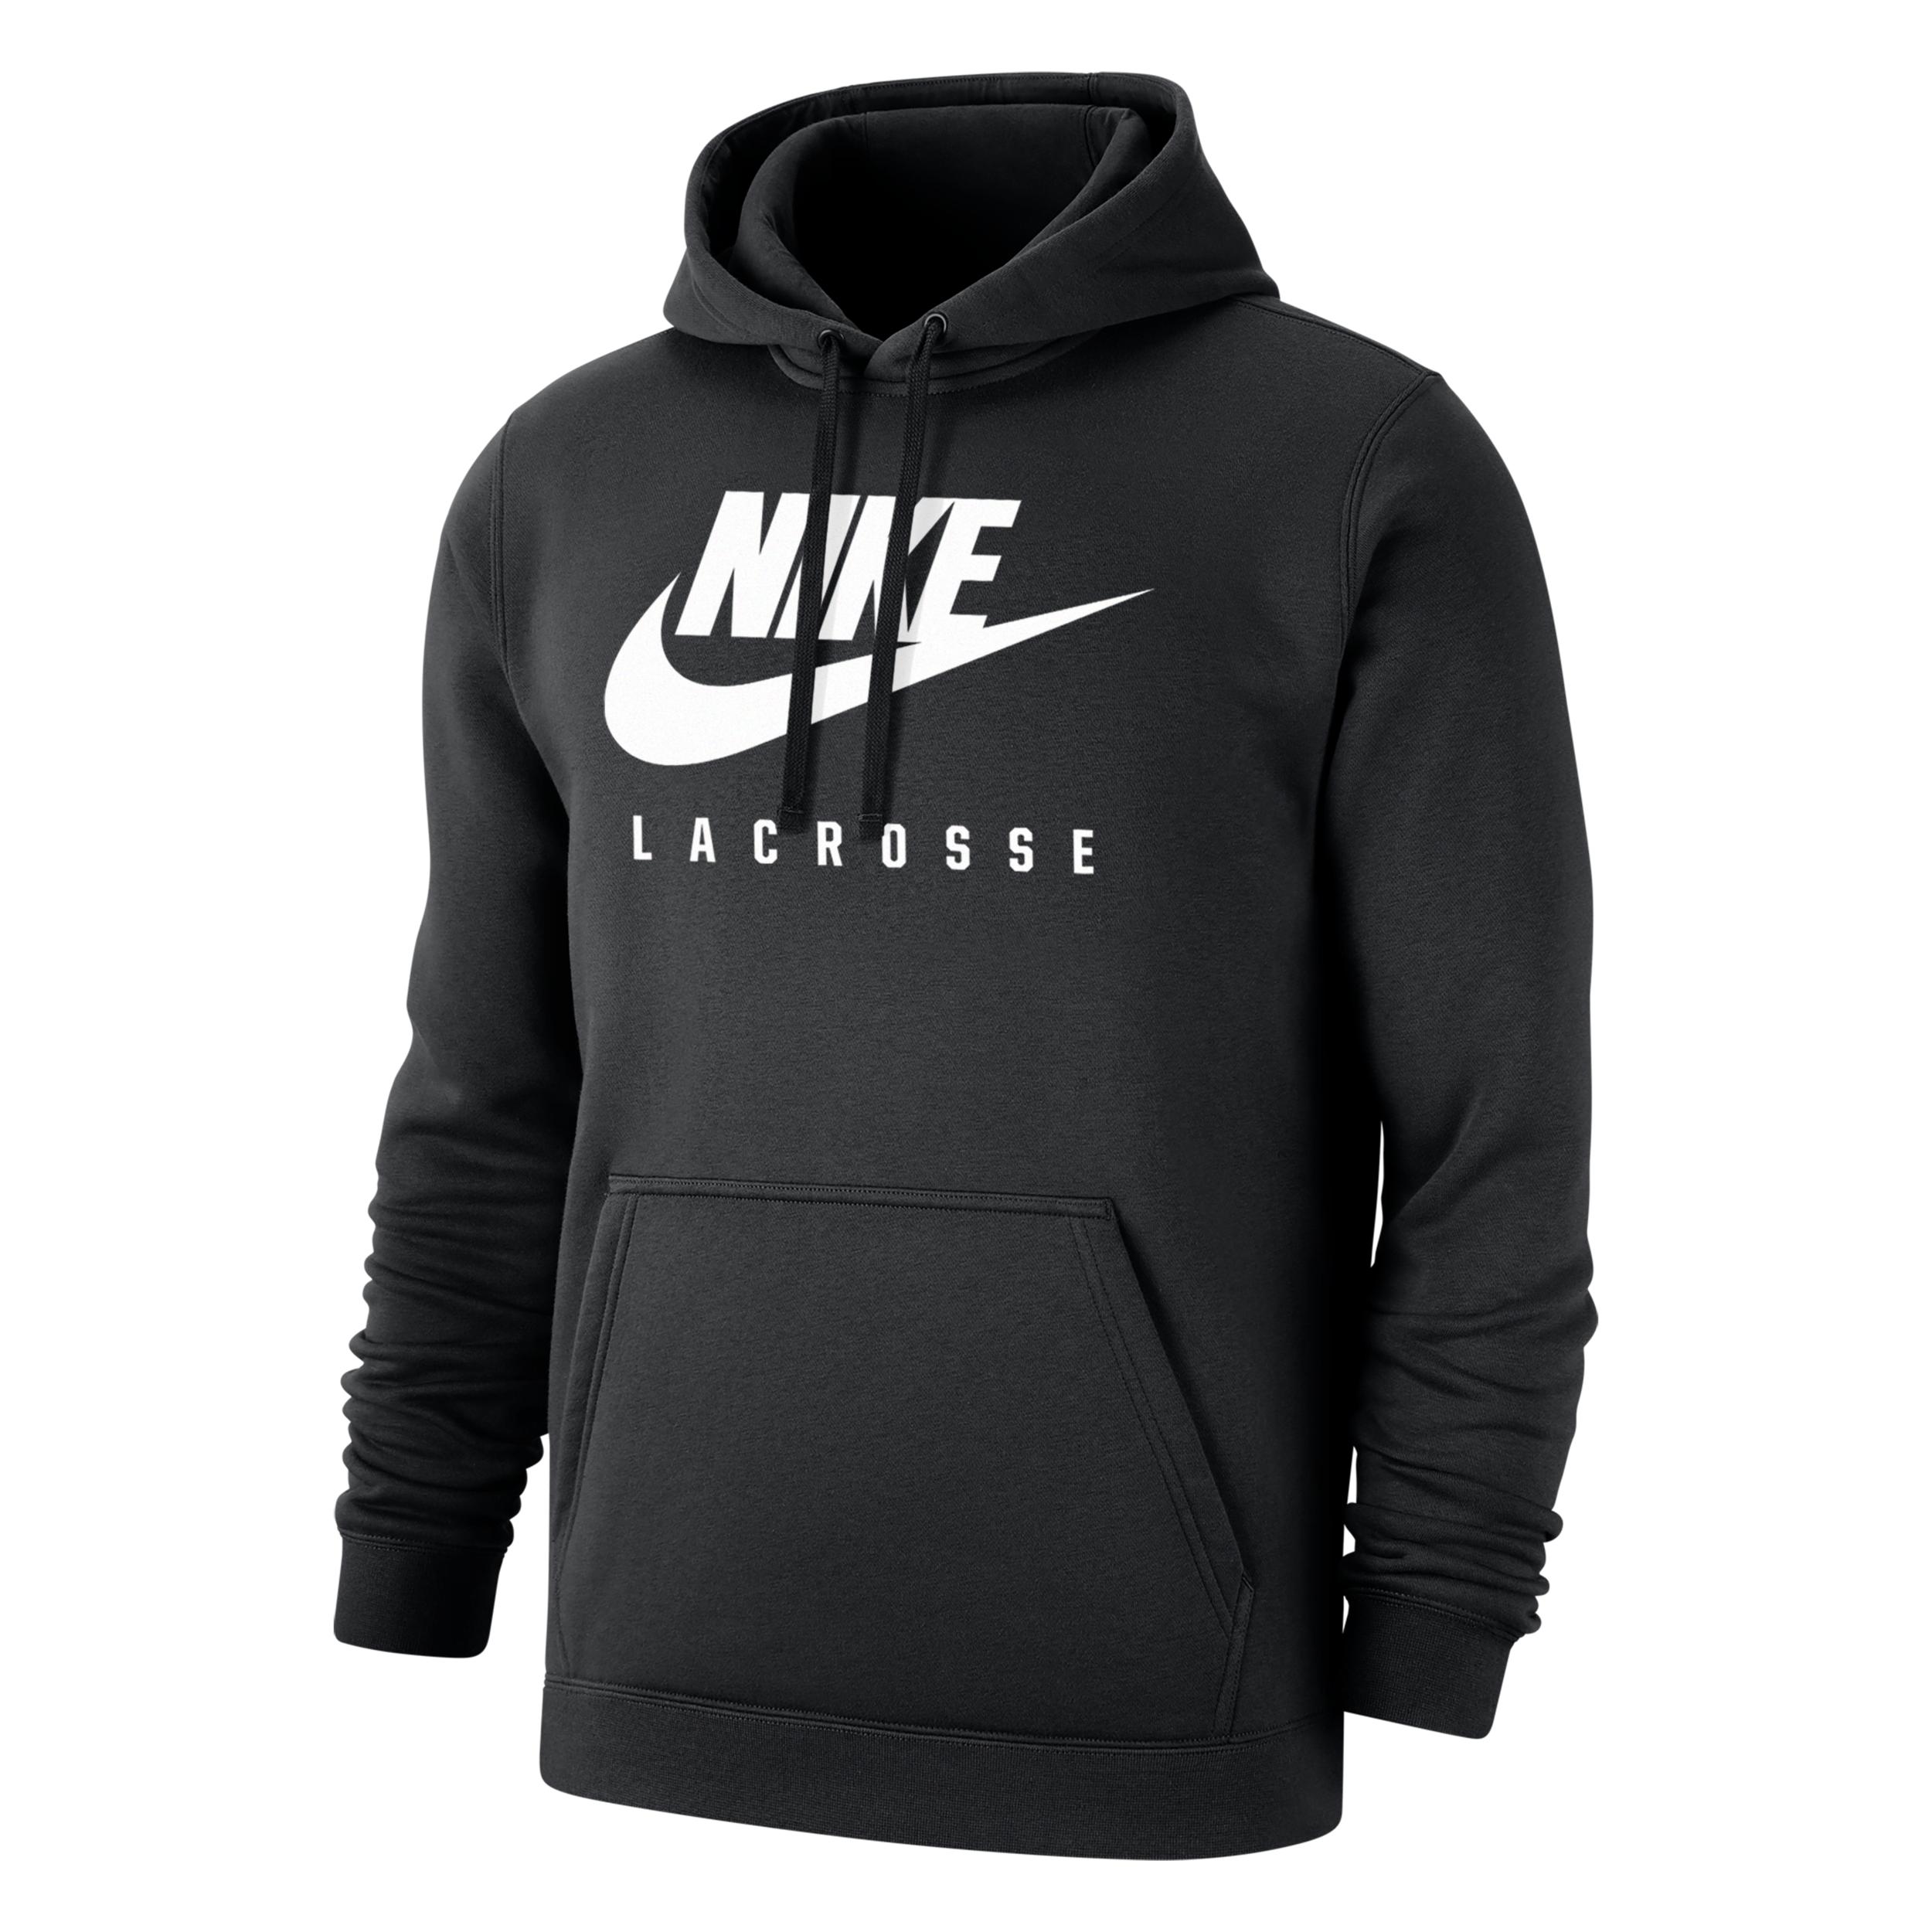 Nike Swoosh Lacrosse Hoodie In Black, for Men | Lyst